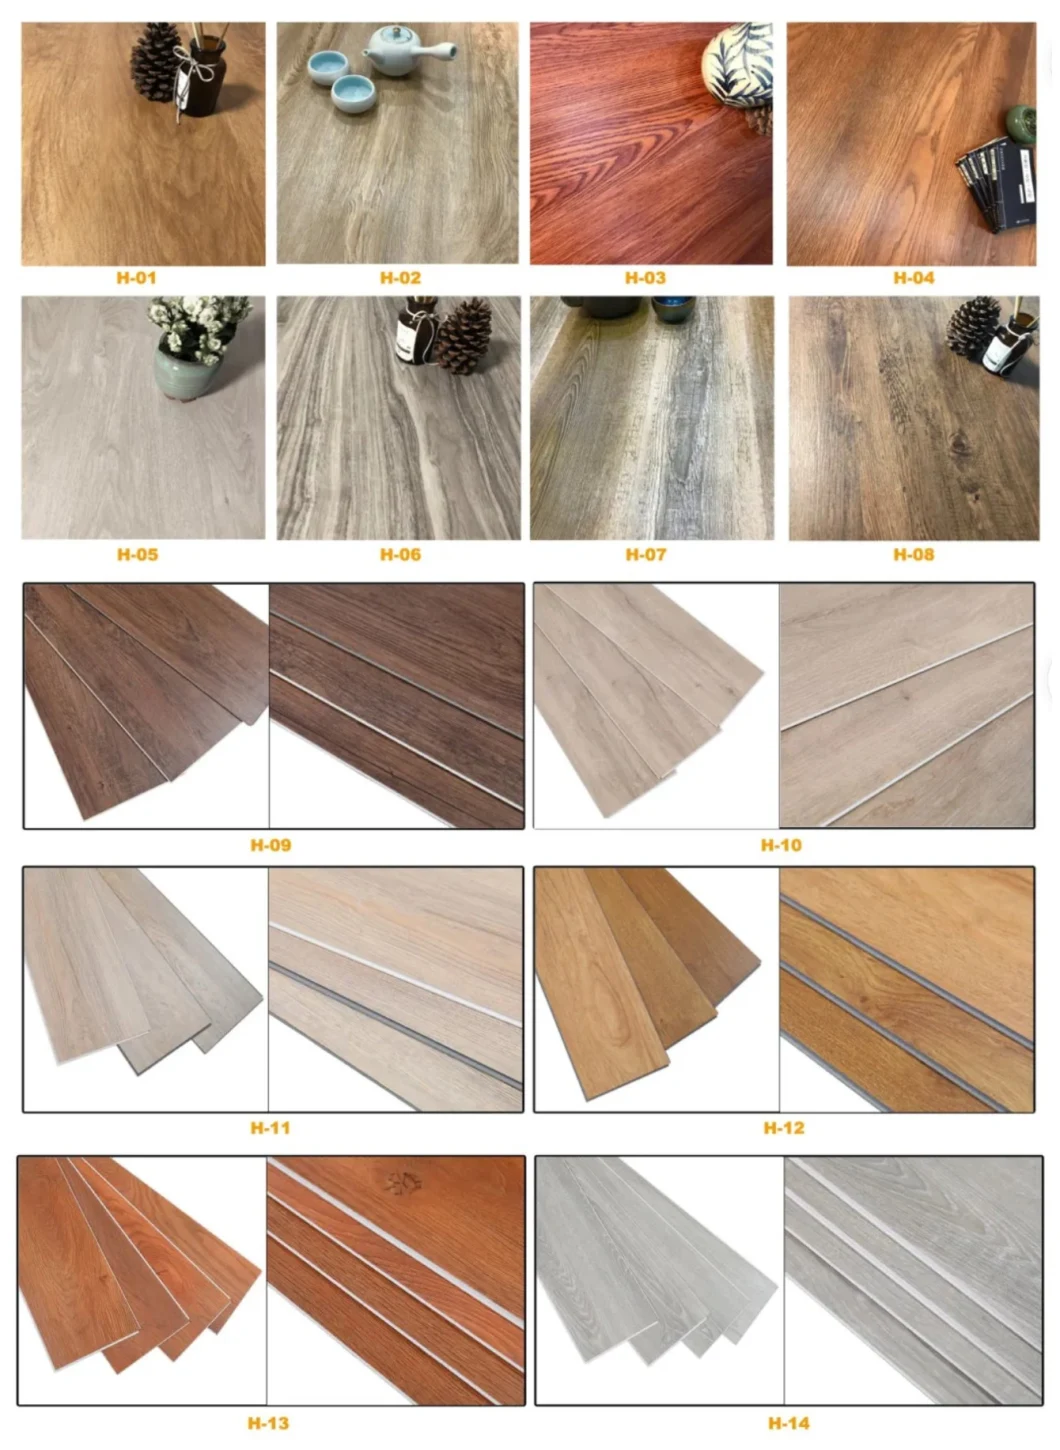 100% Waterproof Floor Lifeproof Sterling Oak Waterproof Vinyl Planks Flooring Waterproof Spc Flooring